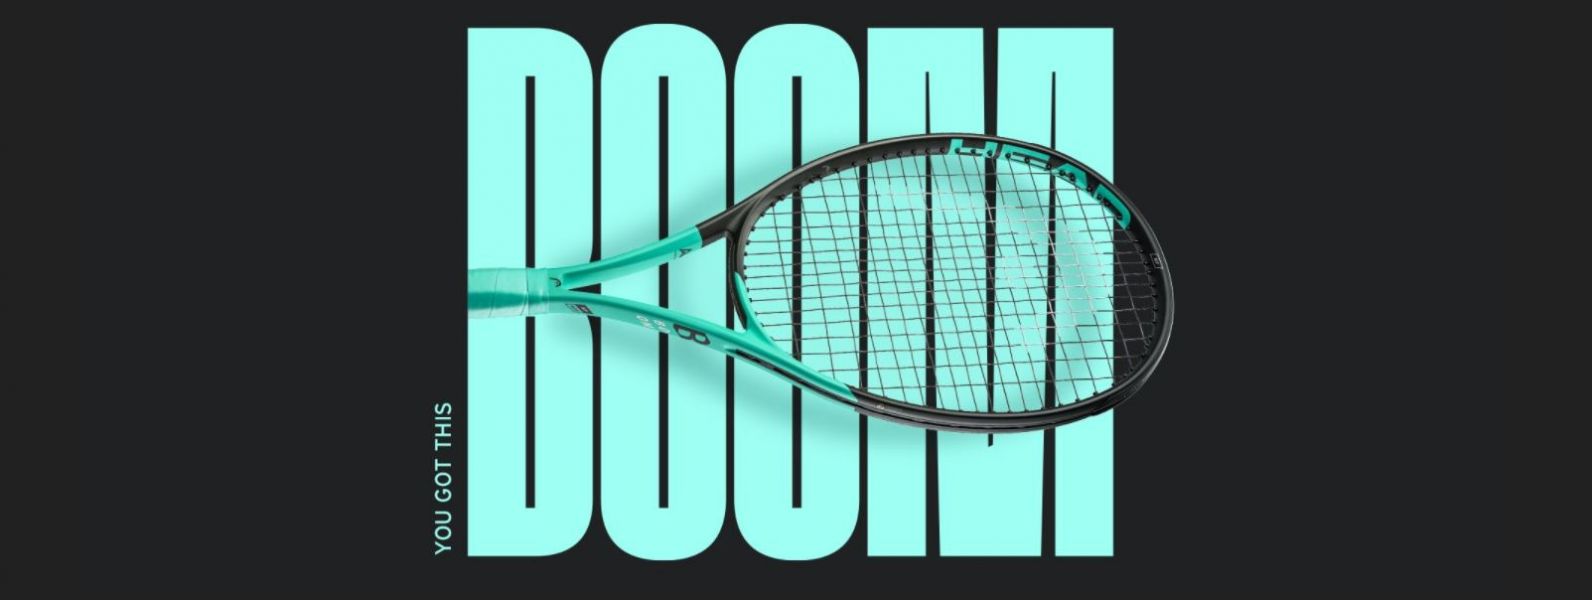 HEAD BOOM MP 網球拍 295g 全新款 2022款 力量與控制 網球拍